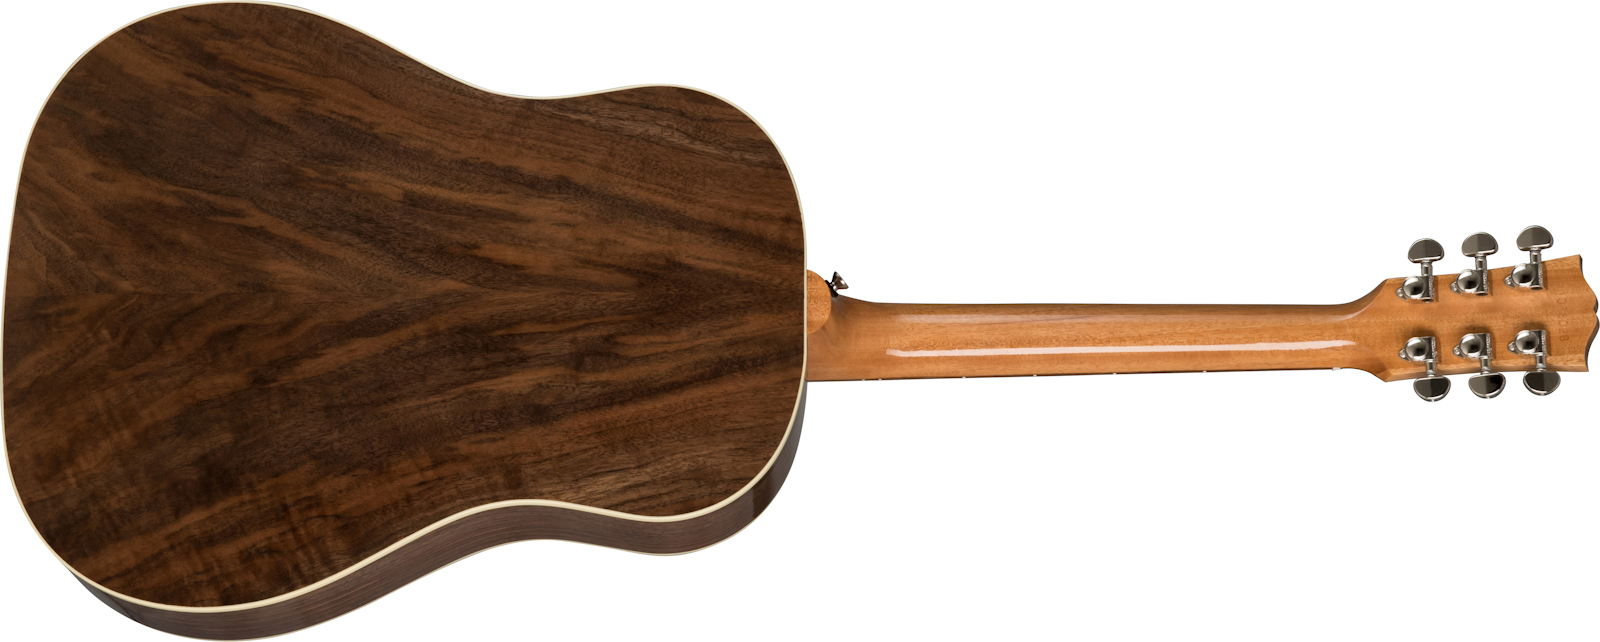 Gibson J-45 Studio Walnut Modern Dreadnought Epicea Noyer Noy - Antique Natural - Elektro-akoestische gitaar - Variation 2